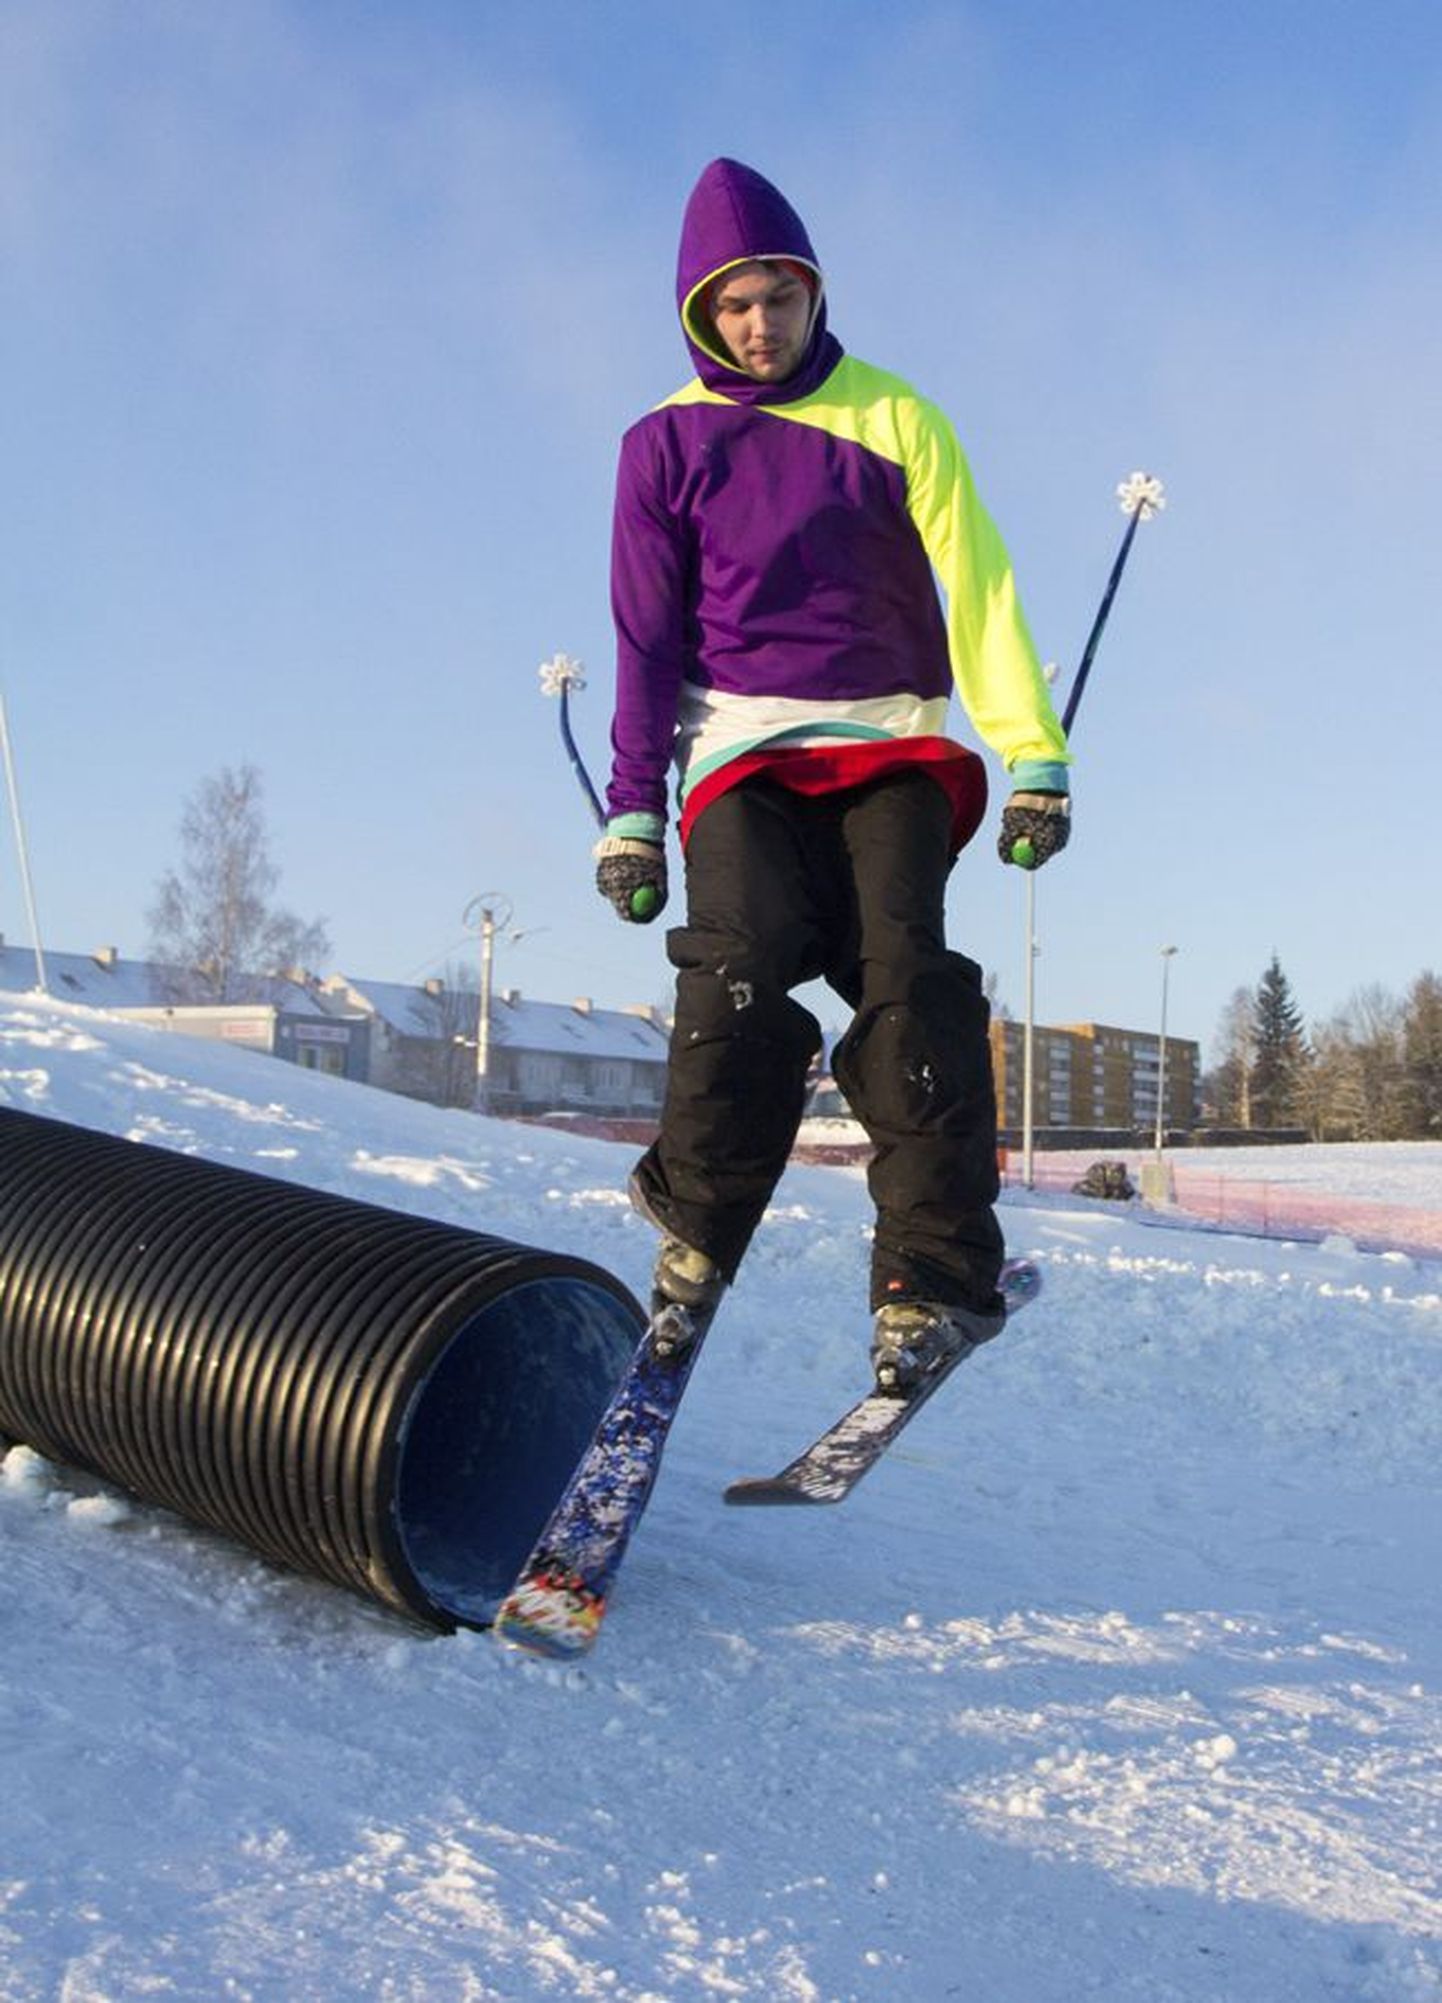 Viljandi trikisuusatajast Timo Jeegerist tehtud pilt valiti maineka suusaajakirja Skiing Magazine mulluse kümne parema foto hulka.